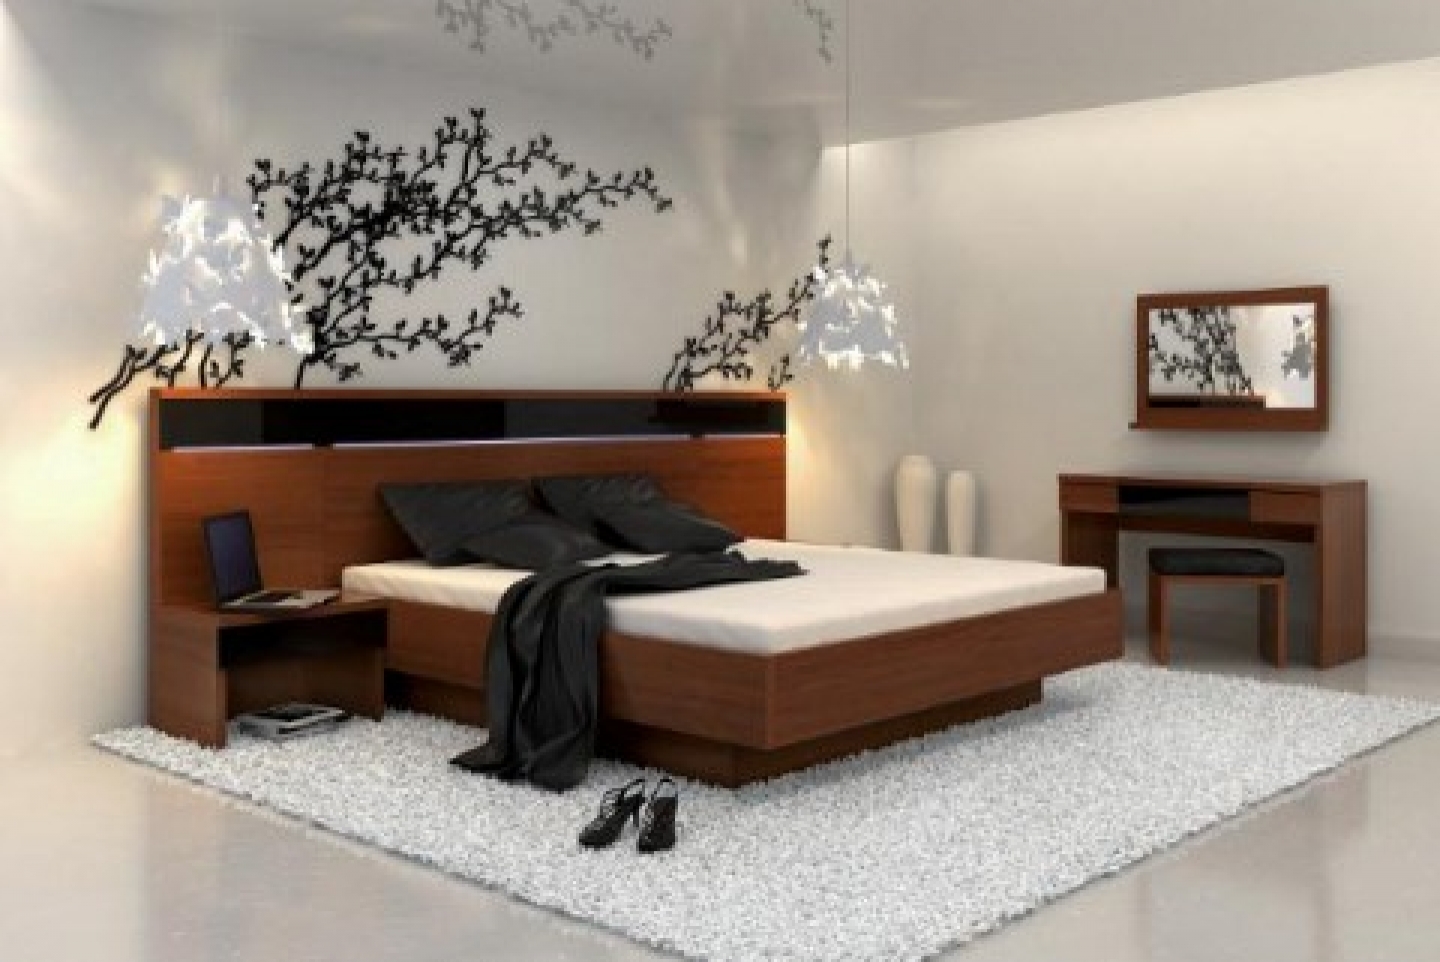 Спальня в китайском стиле дизайн